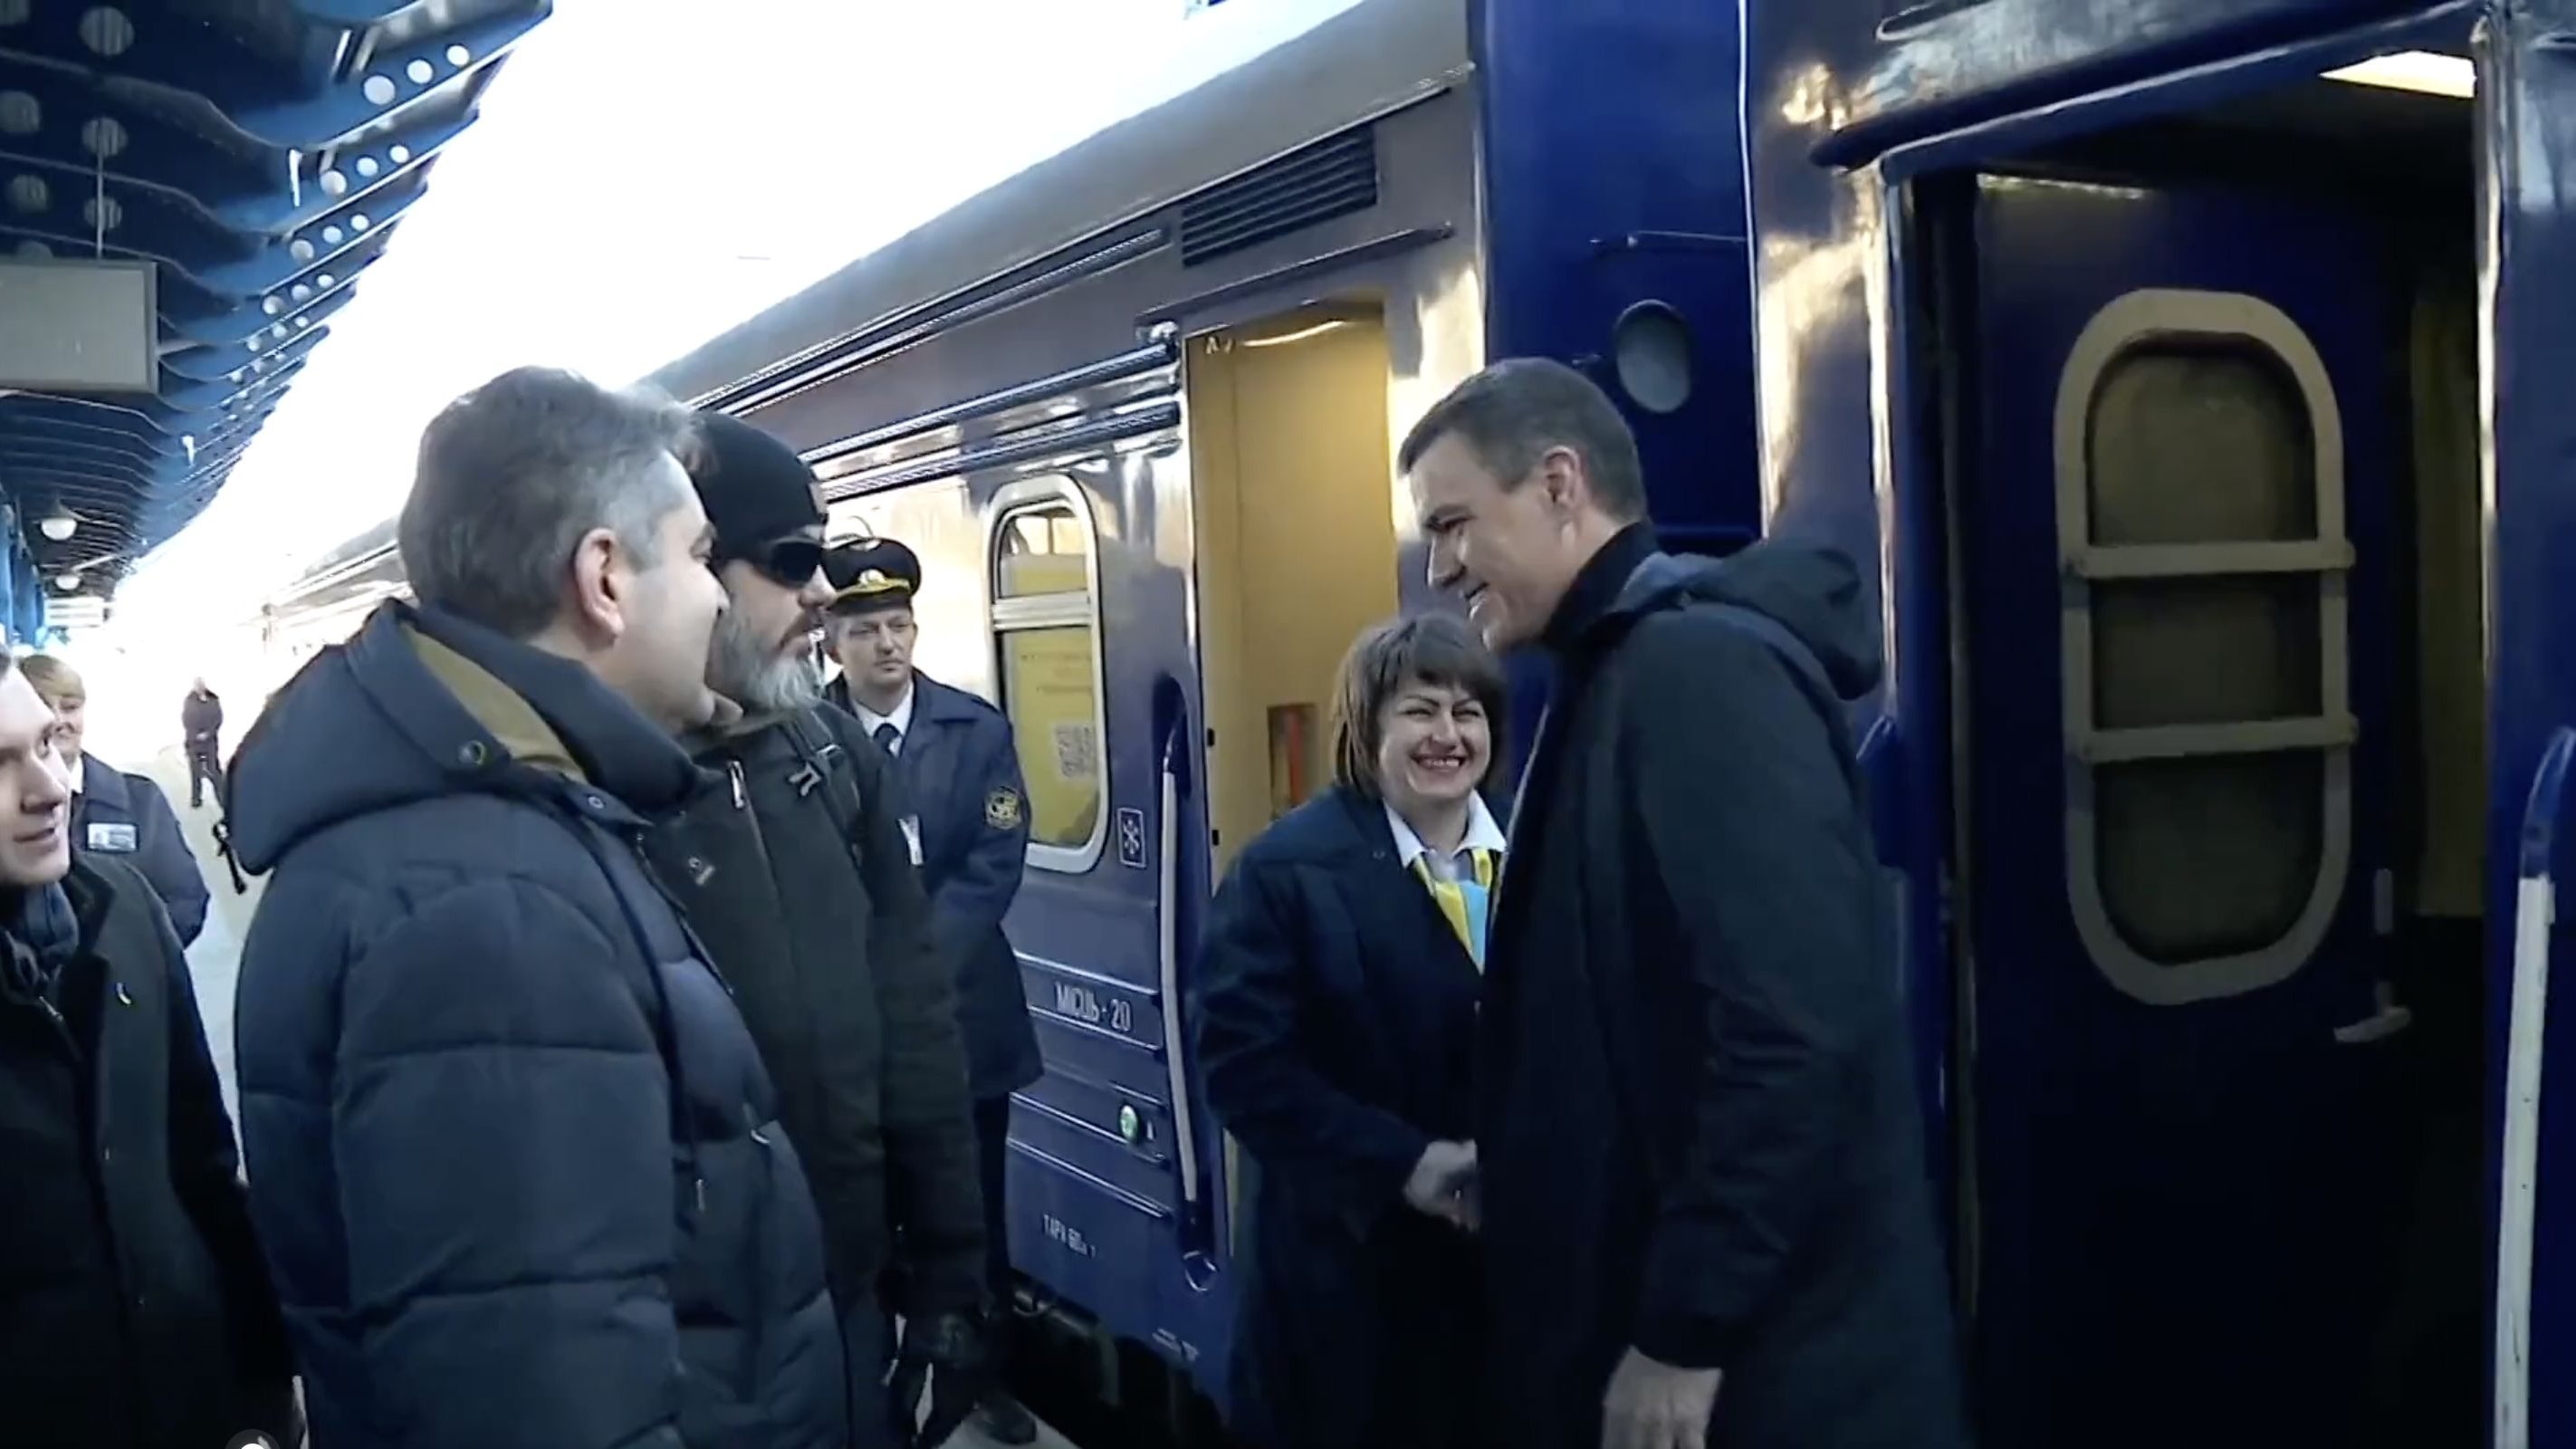 Pedro Sánchez chegou a Kiev de comboio, vindo da Polónia, visitou Bucha e Irpin, antes da reunião com o Presidente da Ucrânia, Volodymyr Zelensky